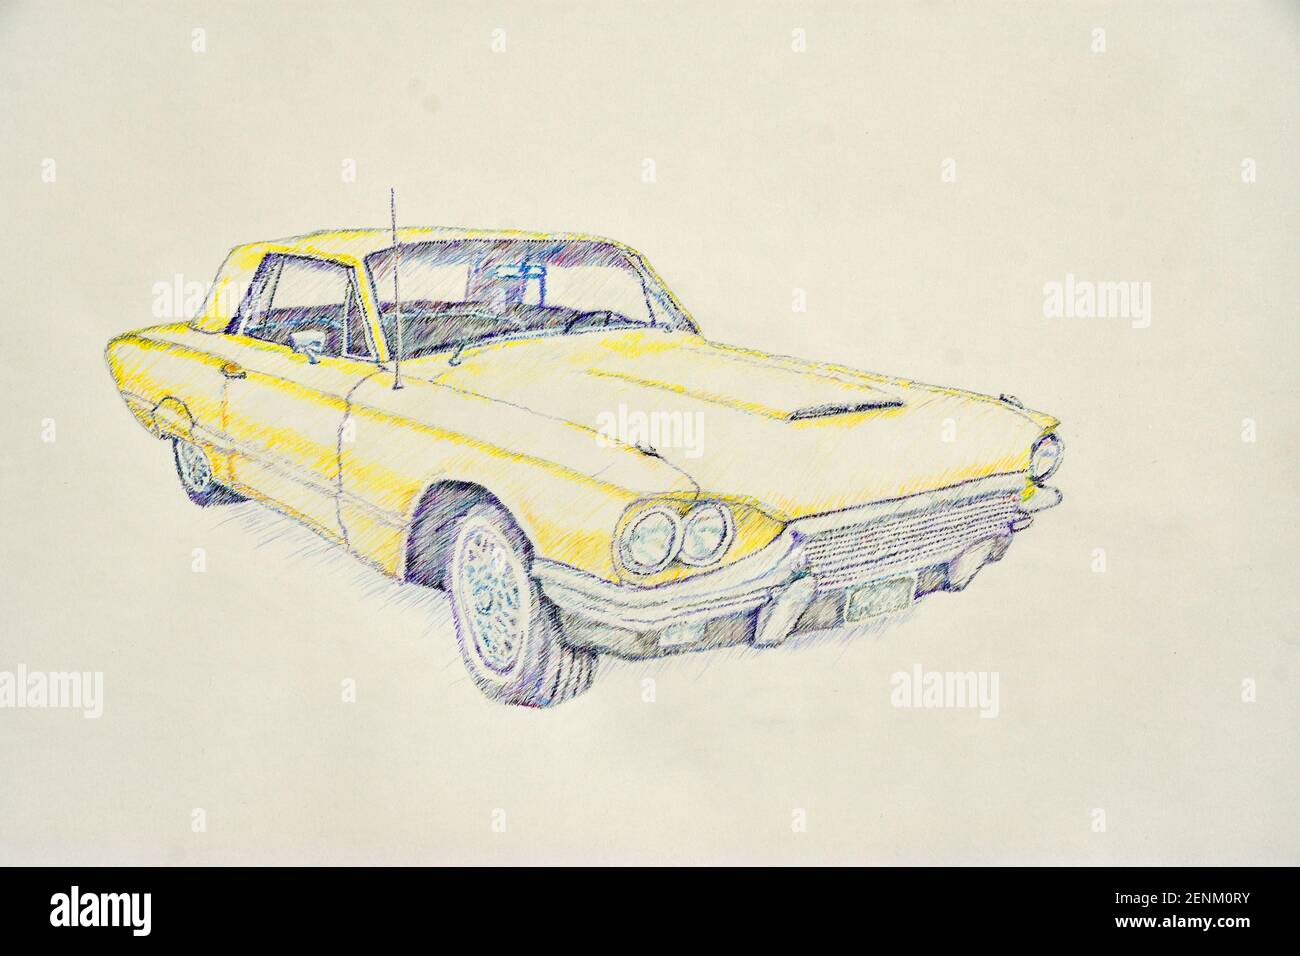 Dessin au crayon de voiture américaine Thunderbird jaune classique sur fond blanc. Banque D'Images